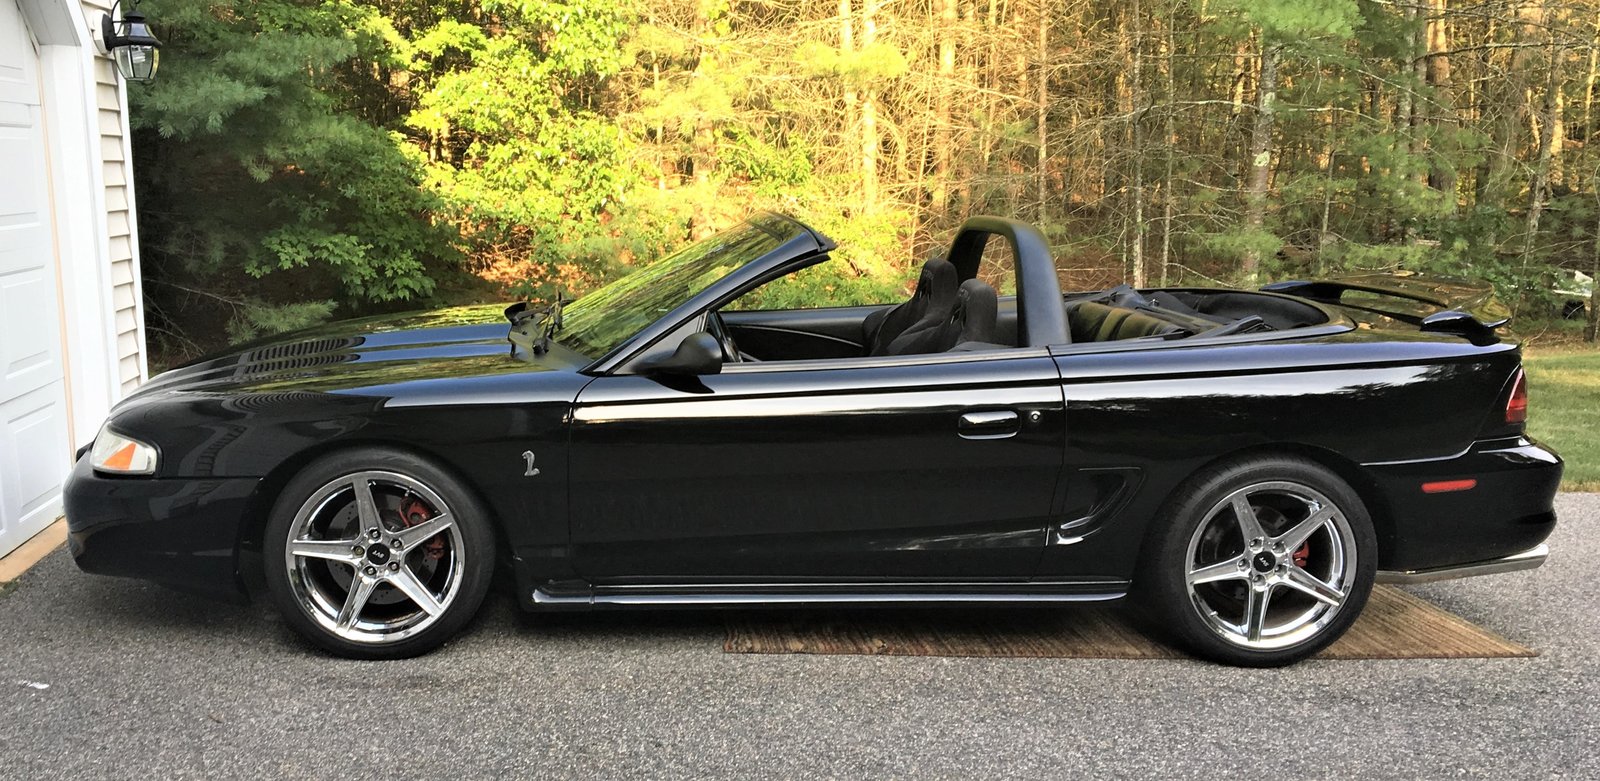 98 Mustang chrome wheels.jpg